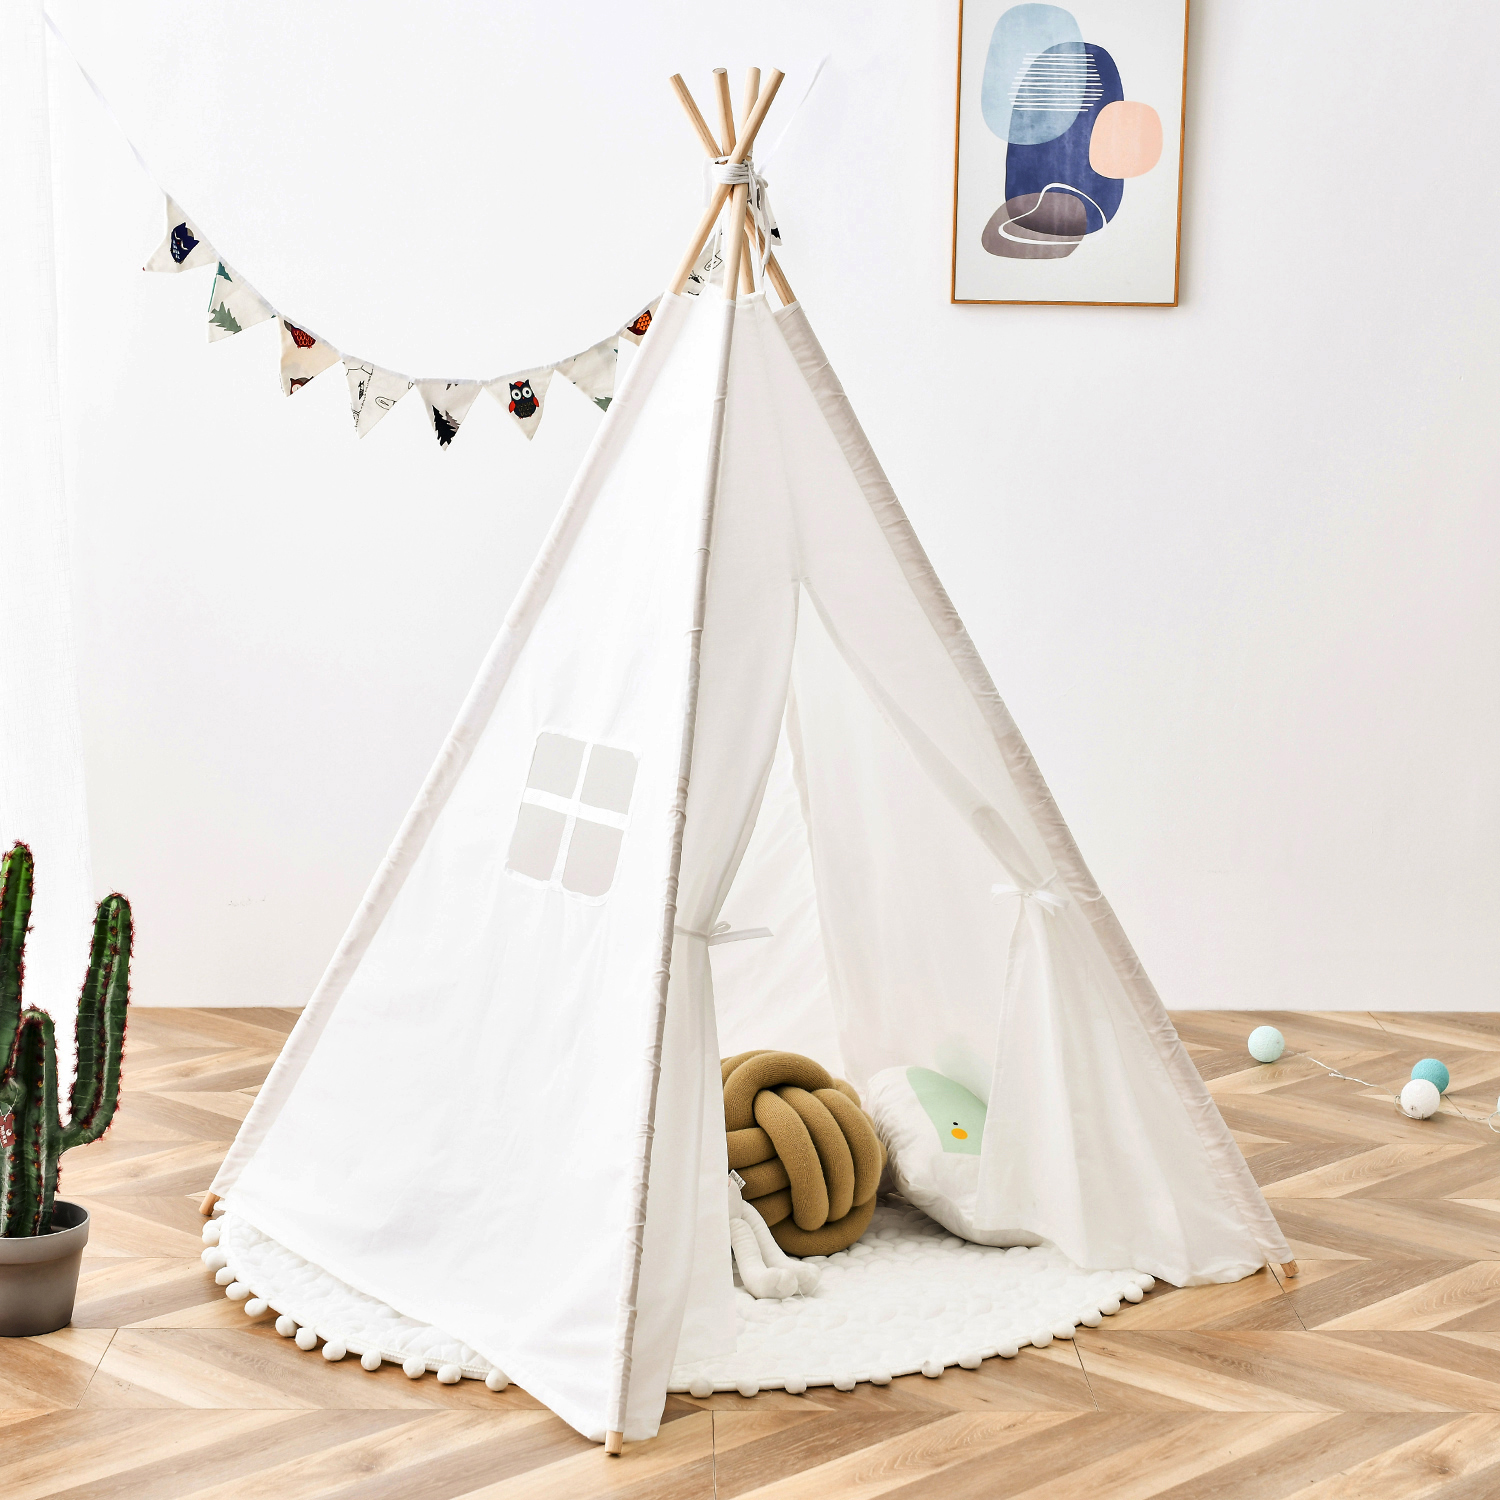 圆锥形儿童帐篷天然棉帆布稳定框架室内户外安全过家玩具适用男孩女孩